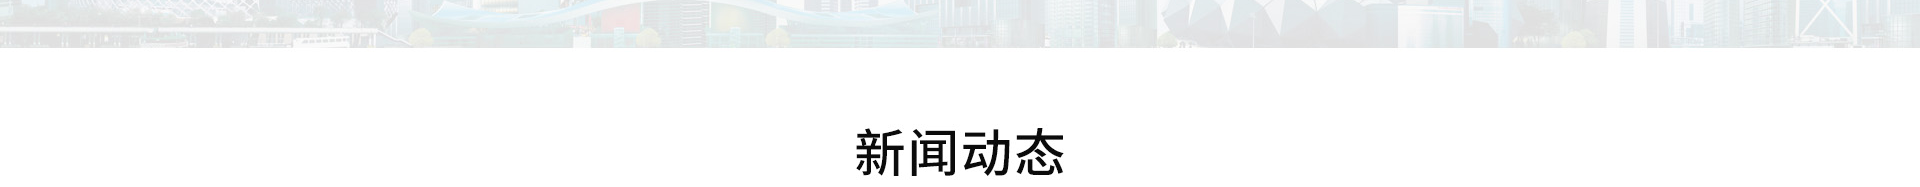 大洲超级Wi-Fi_无线网络行业案例_高端网站建设_深圳网络建设